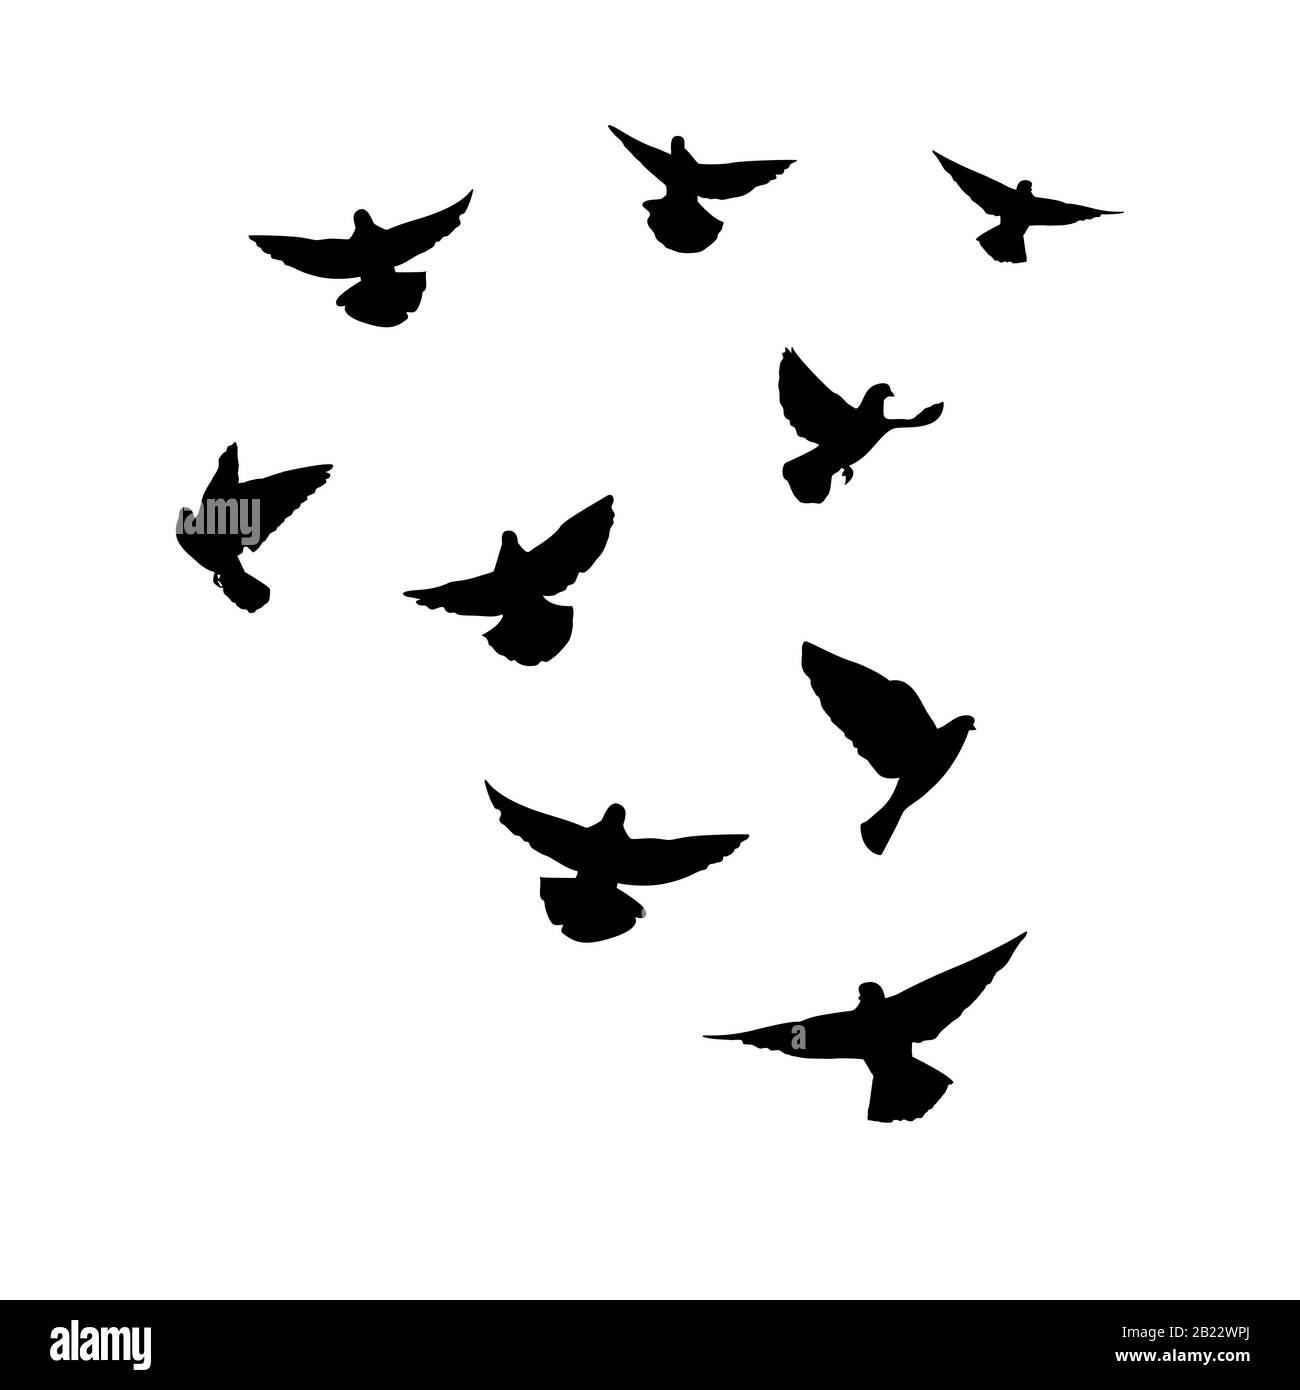 Tauben fliegen. Silhouette von Tauben, die auf weißem Hintergrund fliegen. Vektorgrafiken Stock Vektor